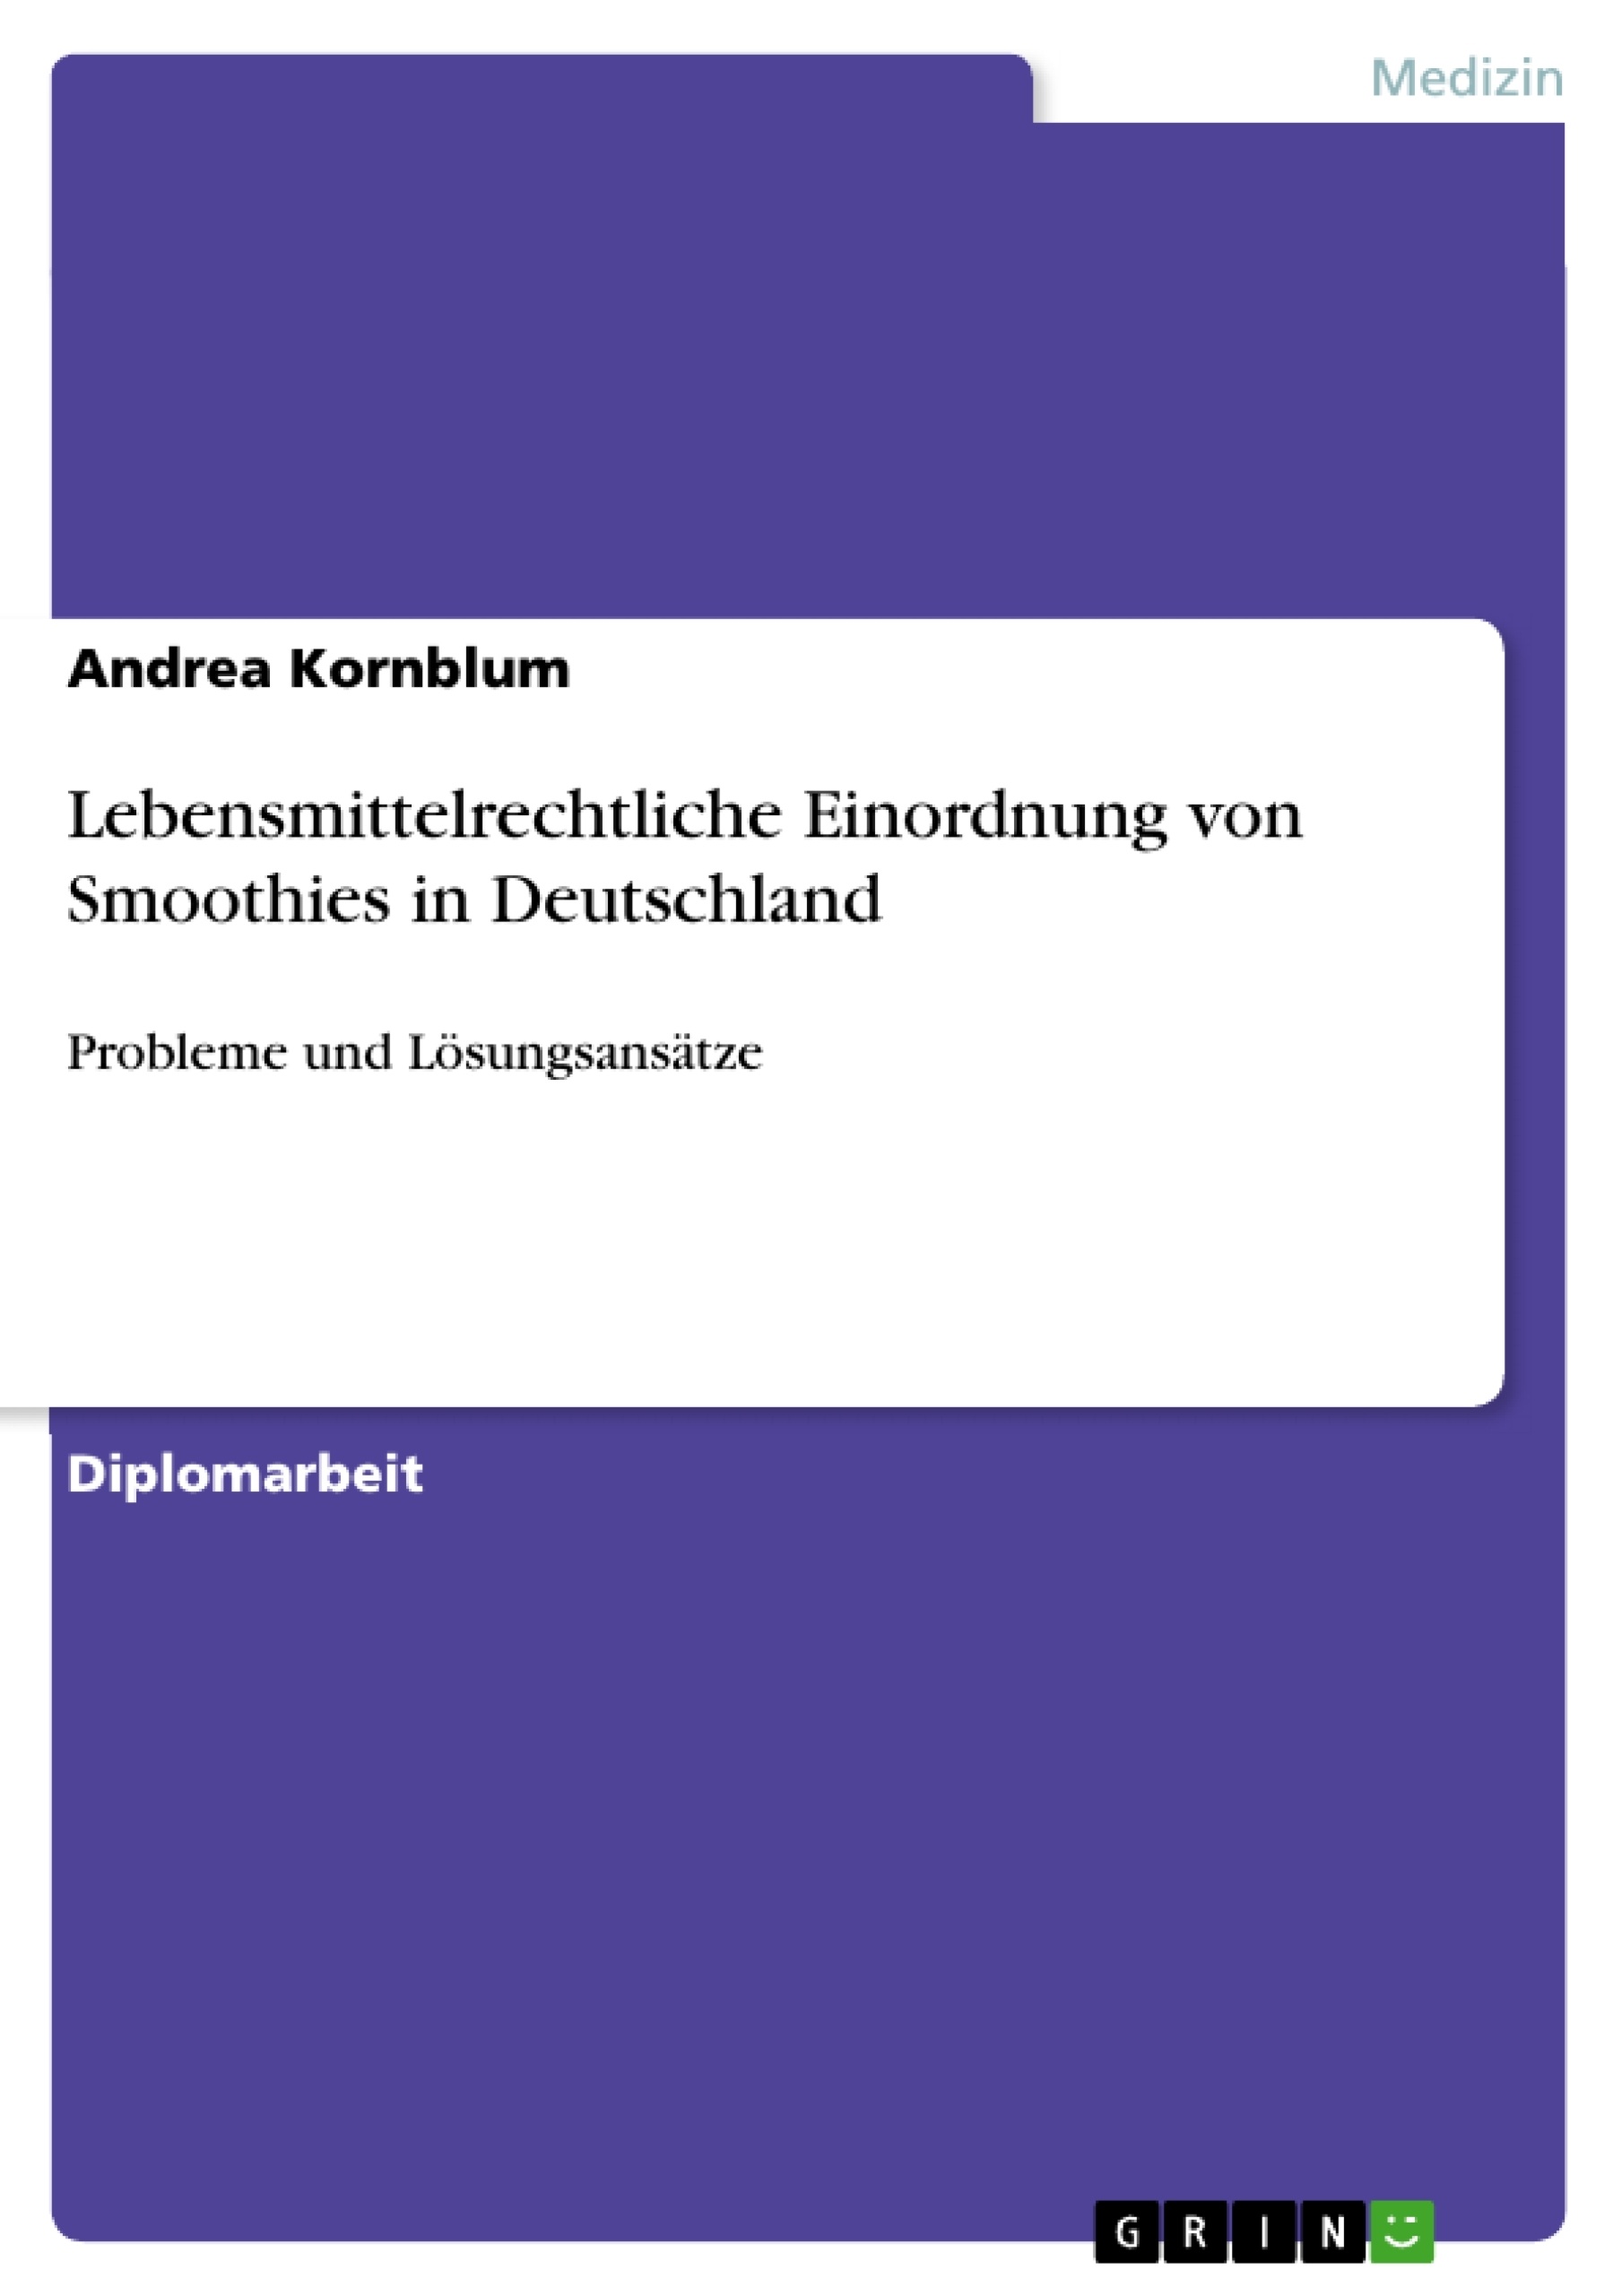 Title: Lebensmittelrechtliche Einordnung von Smoothies in Deutschland